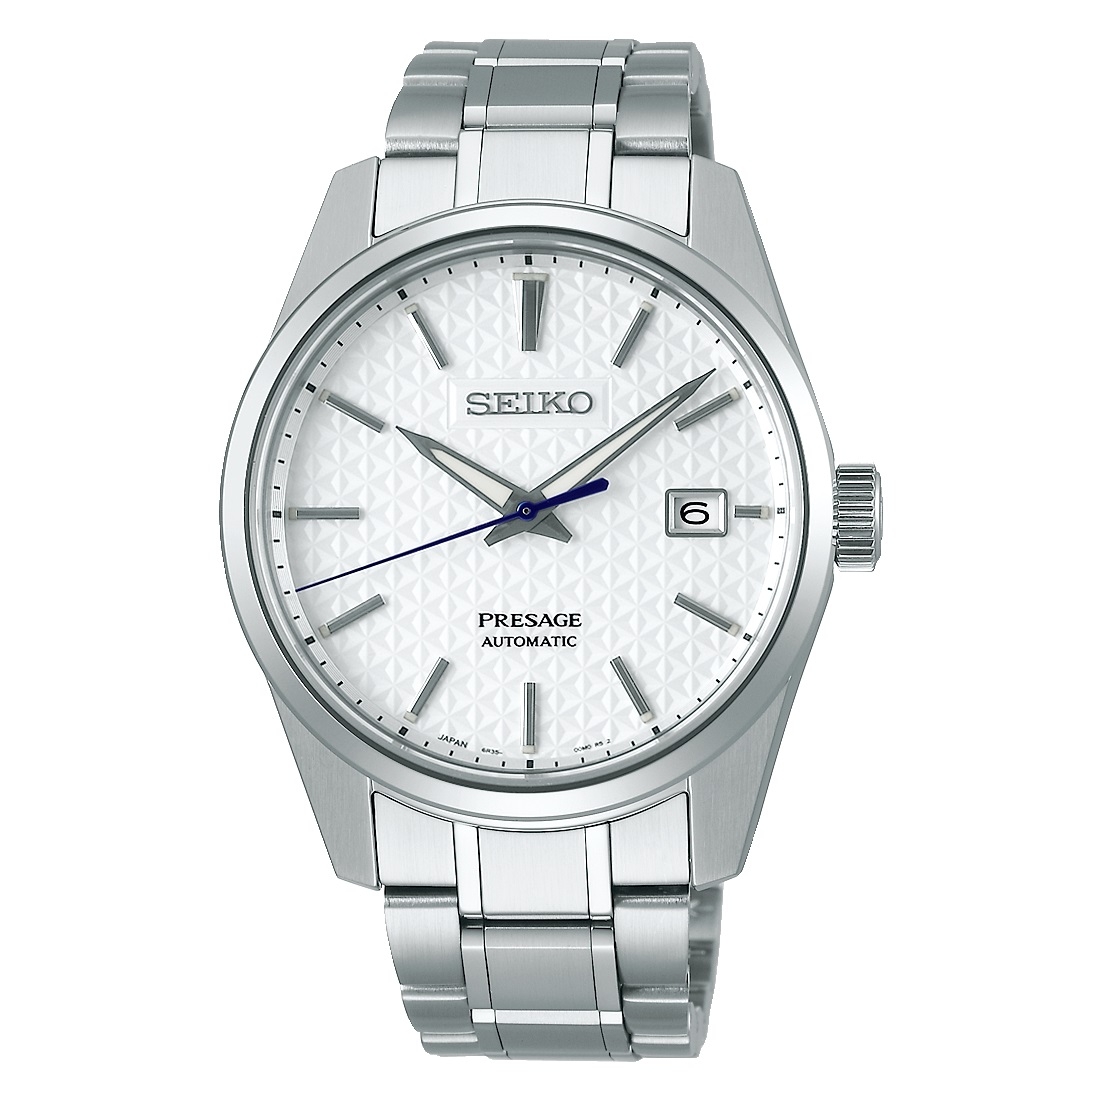 SEIKO - b2b spezialisiert - Uhren - Herstellung | wwt - erste